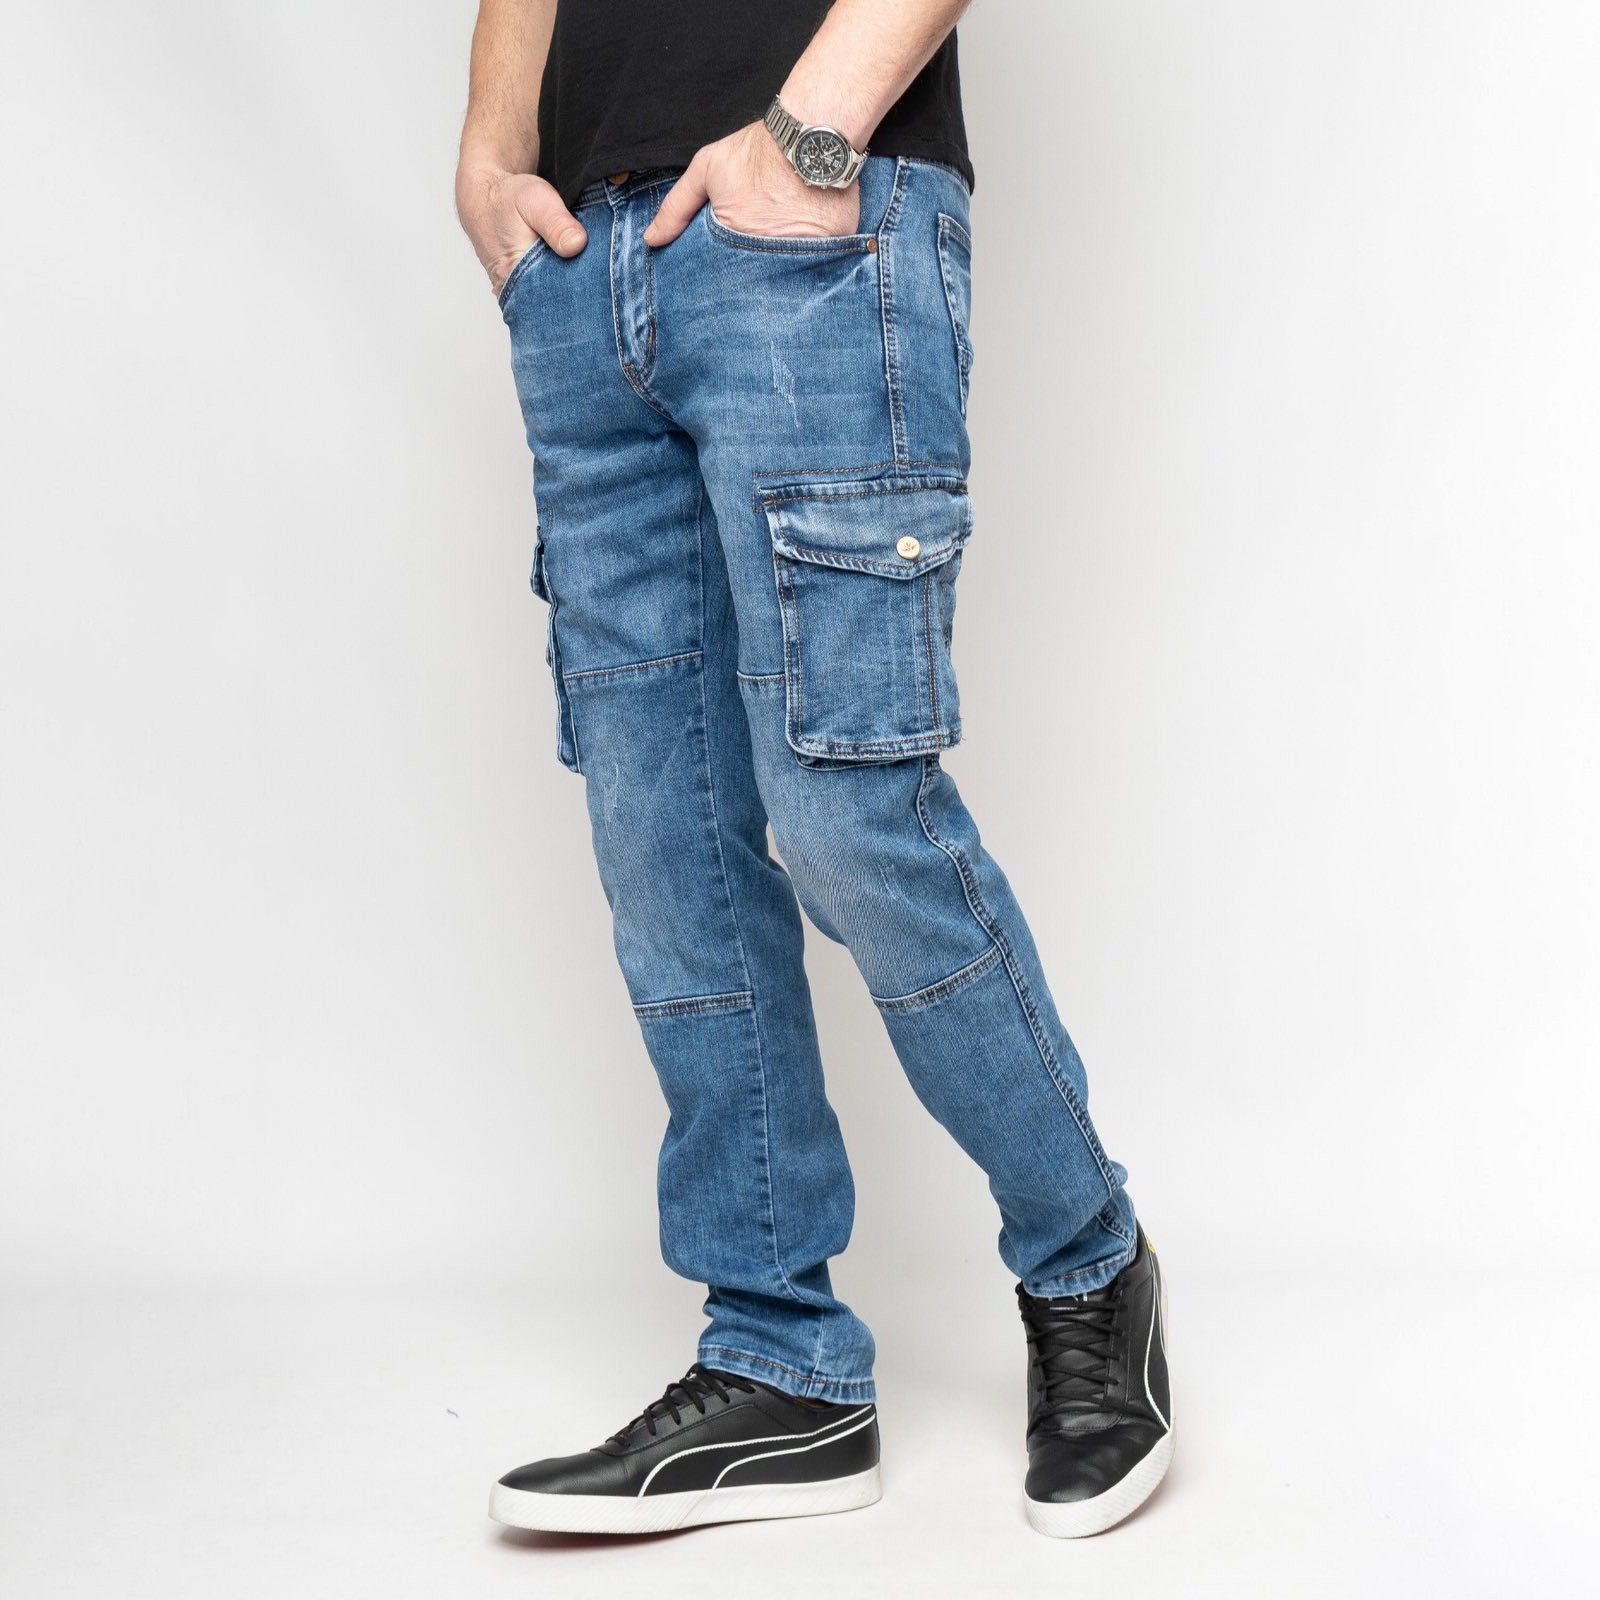 8327 FANGSIDA джинсы  мужские синие стрейчевые (8 ед. размеры: 29.30.31.32.33.34.36.38)                